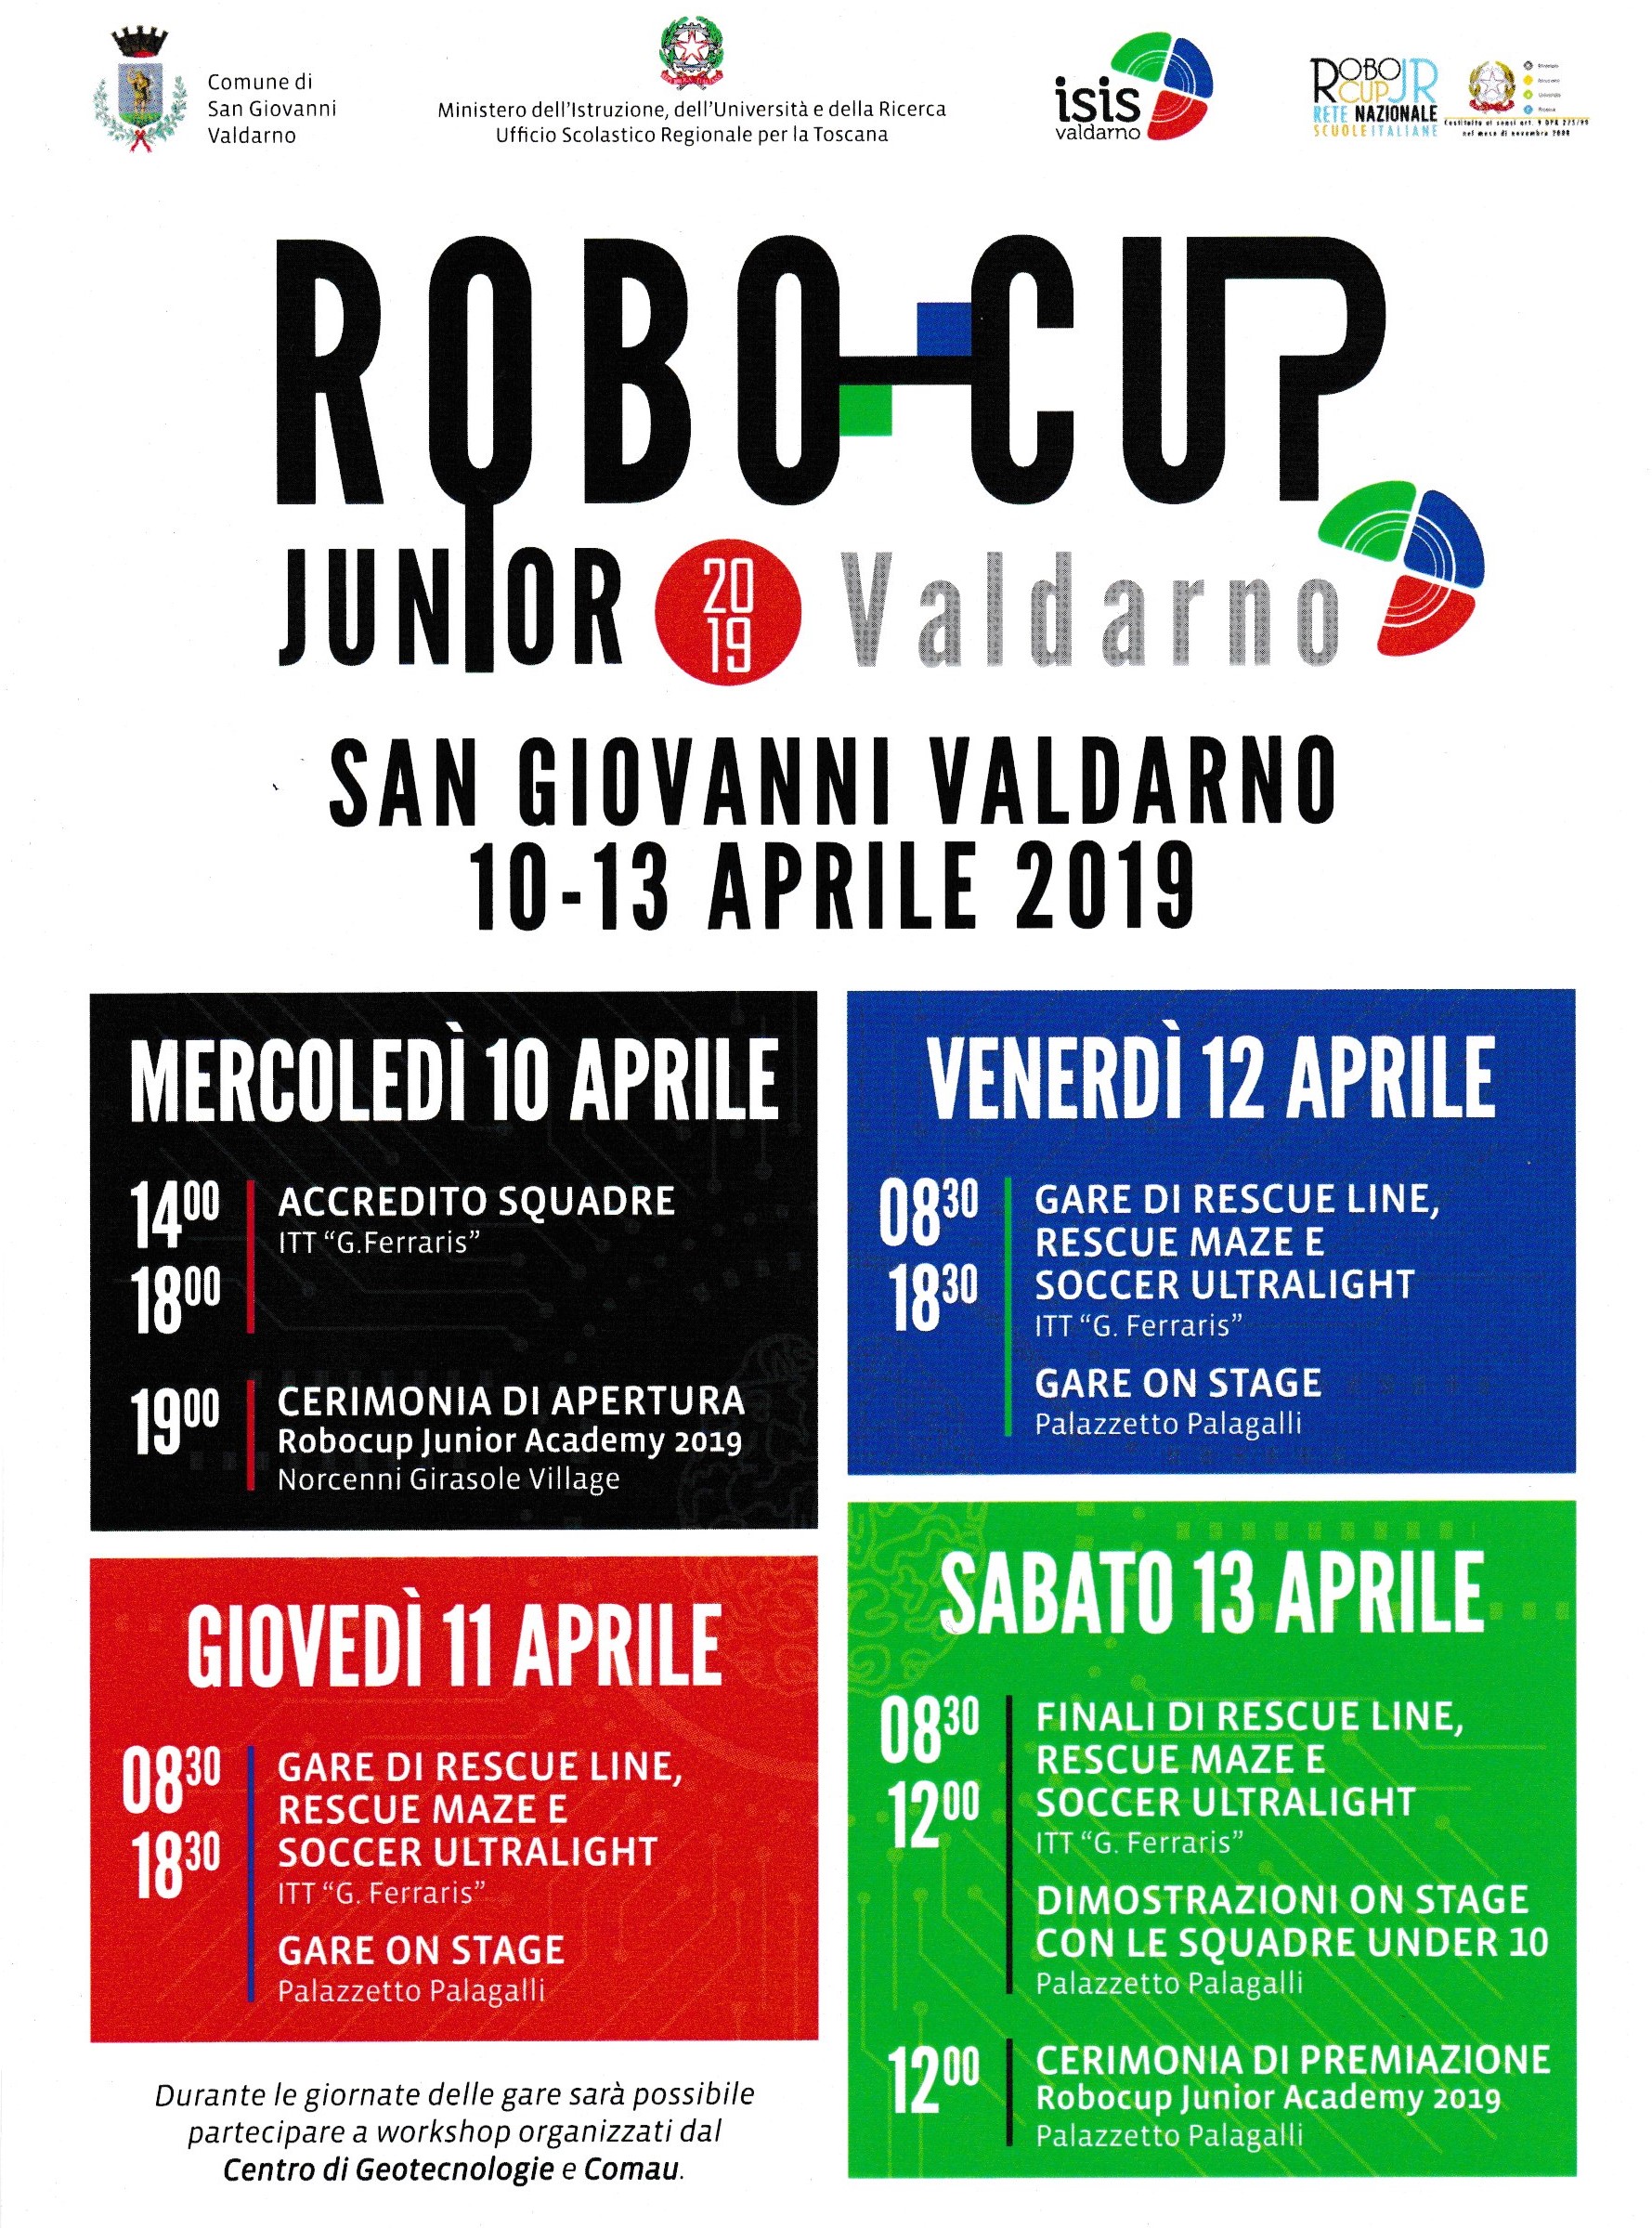 Robocup Junior Academy 2019: San Giovanni Valdarno capitale italiana della robotica